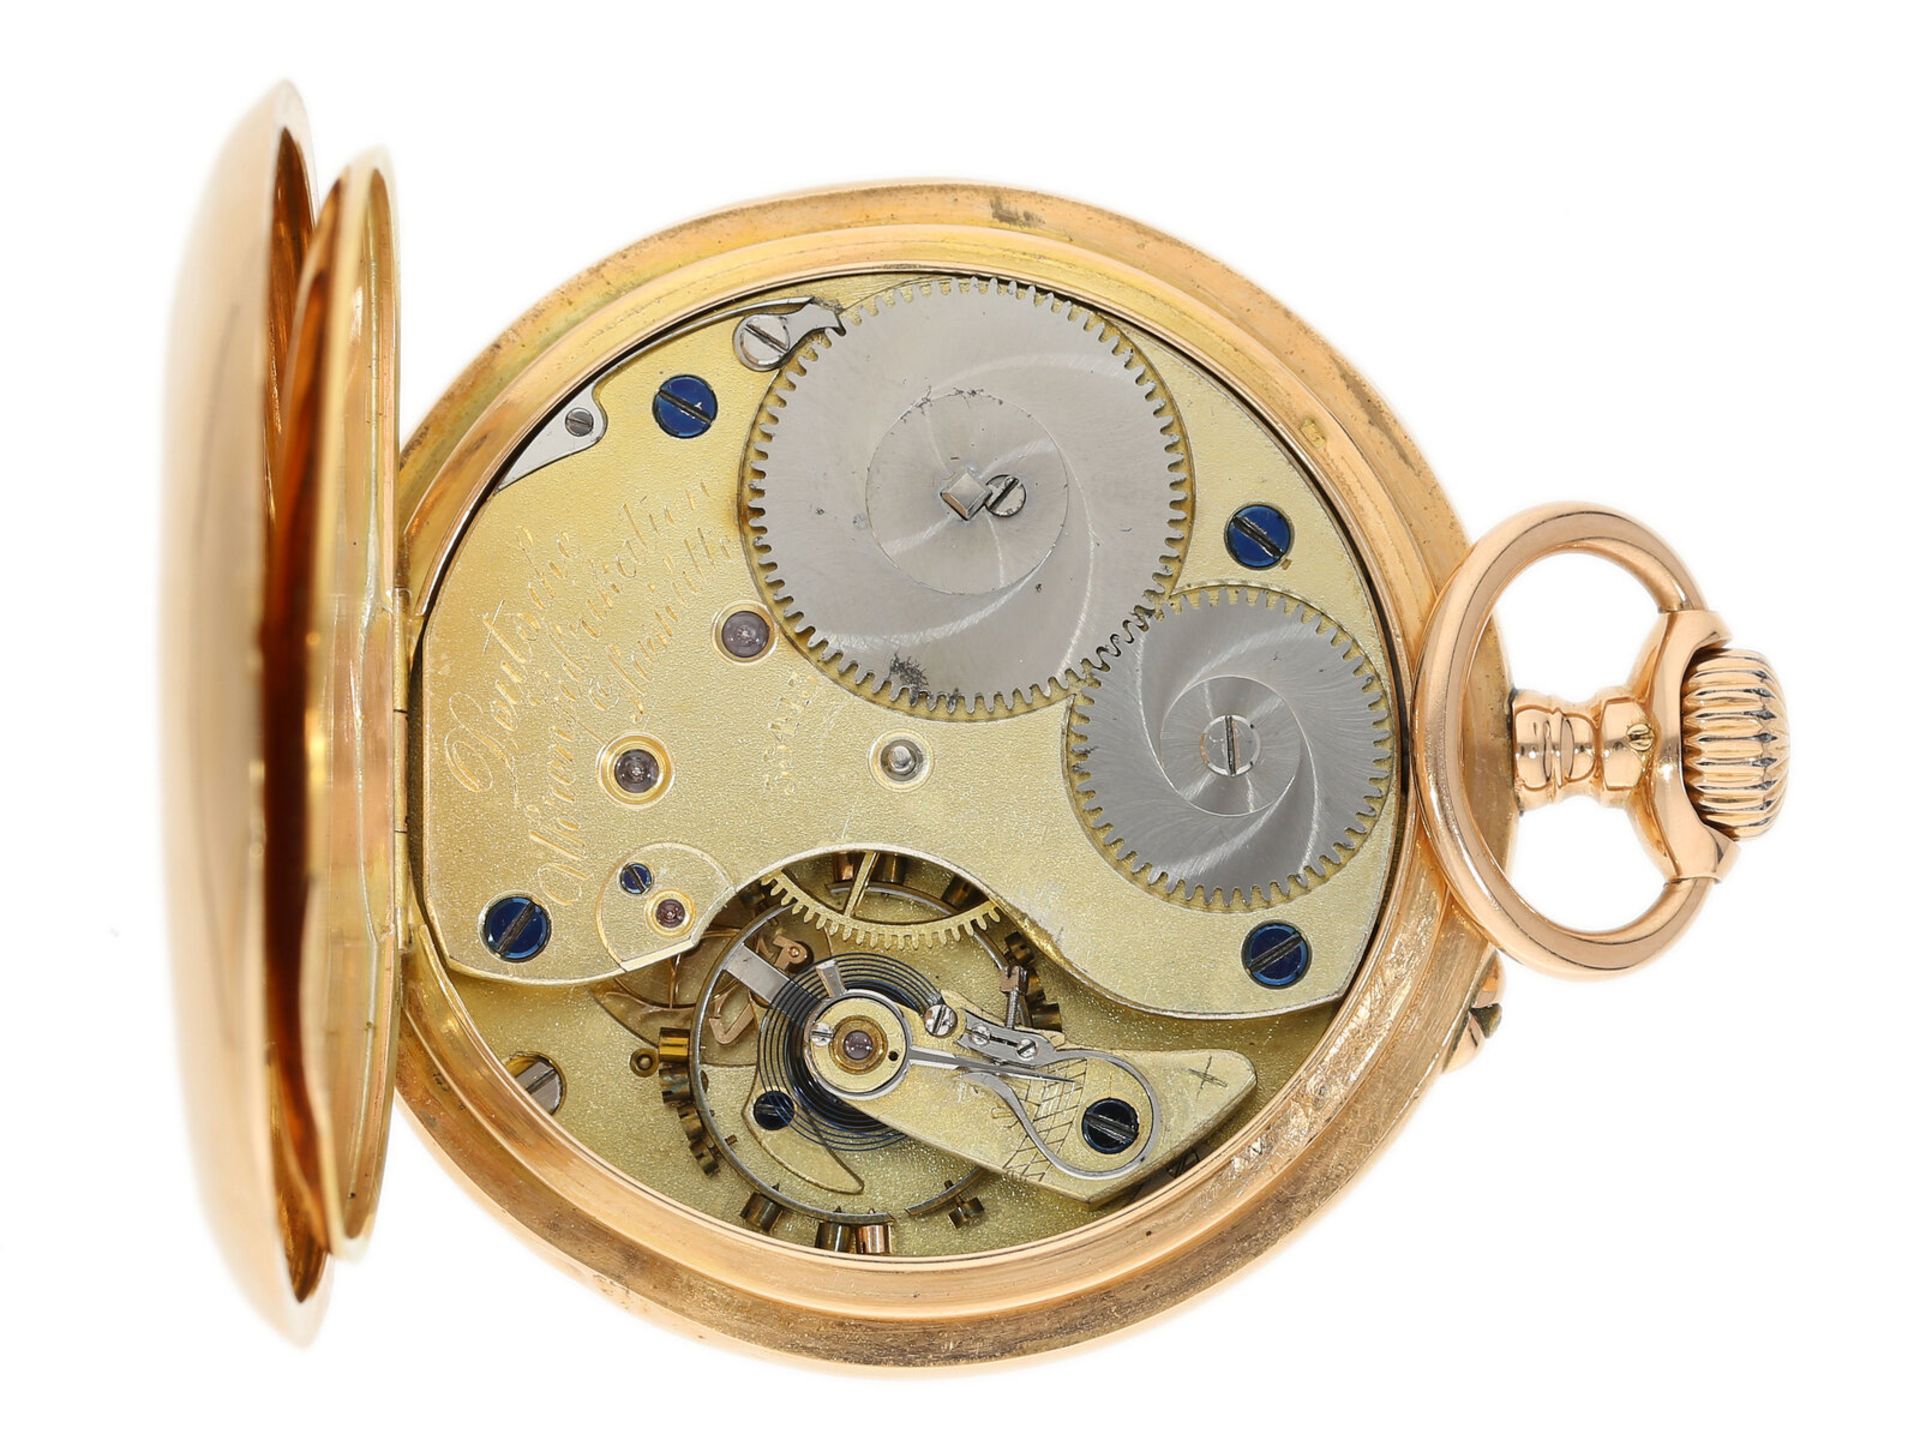 Goldene Herrentaschenuhr, A. Lange & Söhne Deutsche Uhrenfabrikation Glashütte No.55415 - Bild 5 aus 5